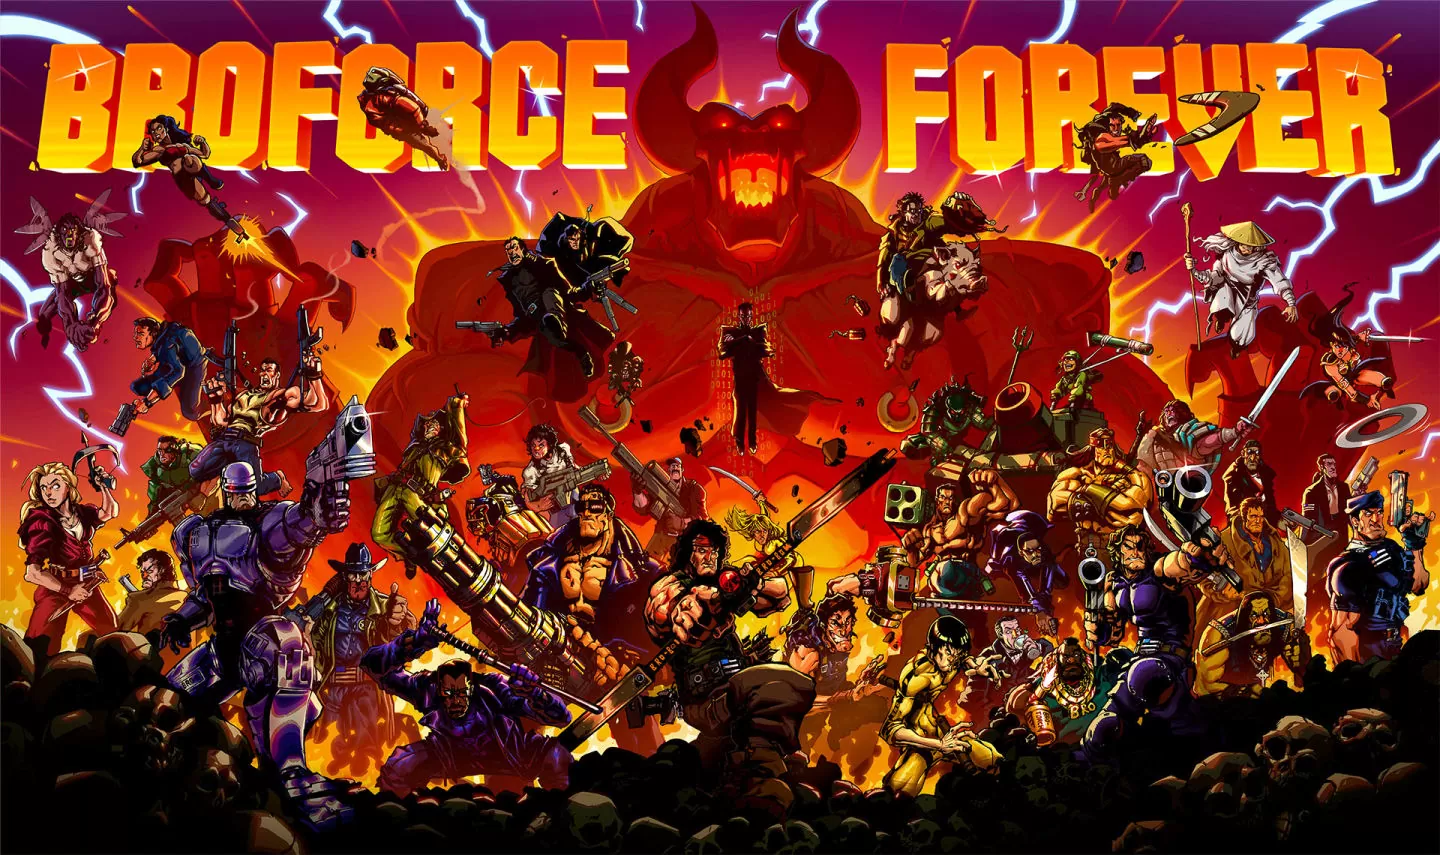 向像素动作游戏《Broforce》免费大改版今日来袭！ 「Broforce Forever」6个兄贵、4大挑战等你玩